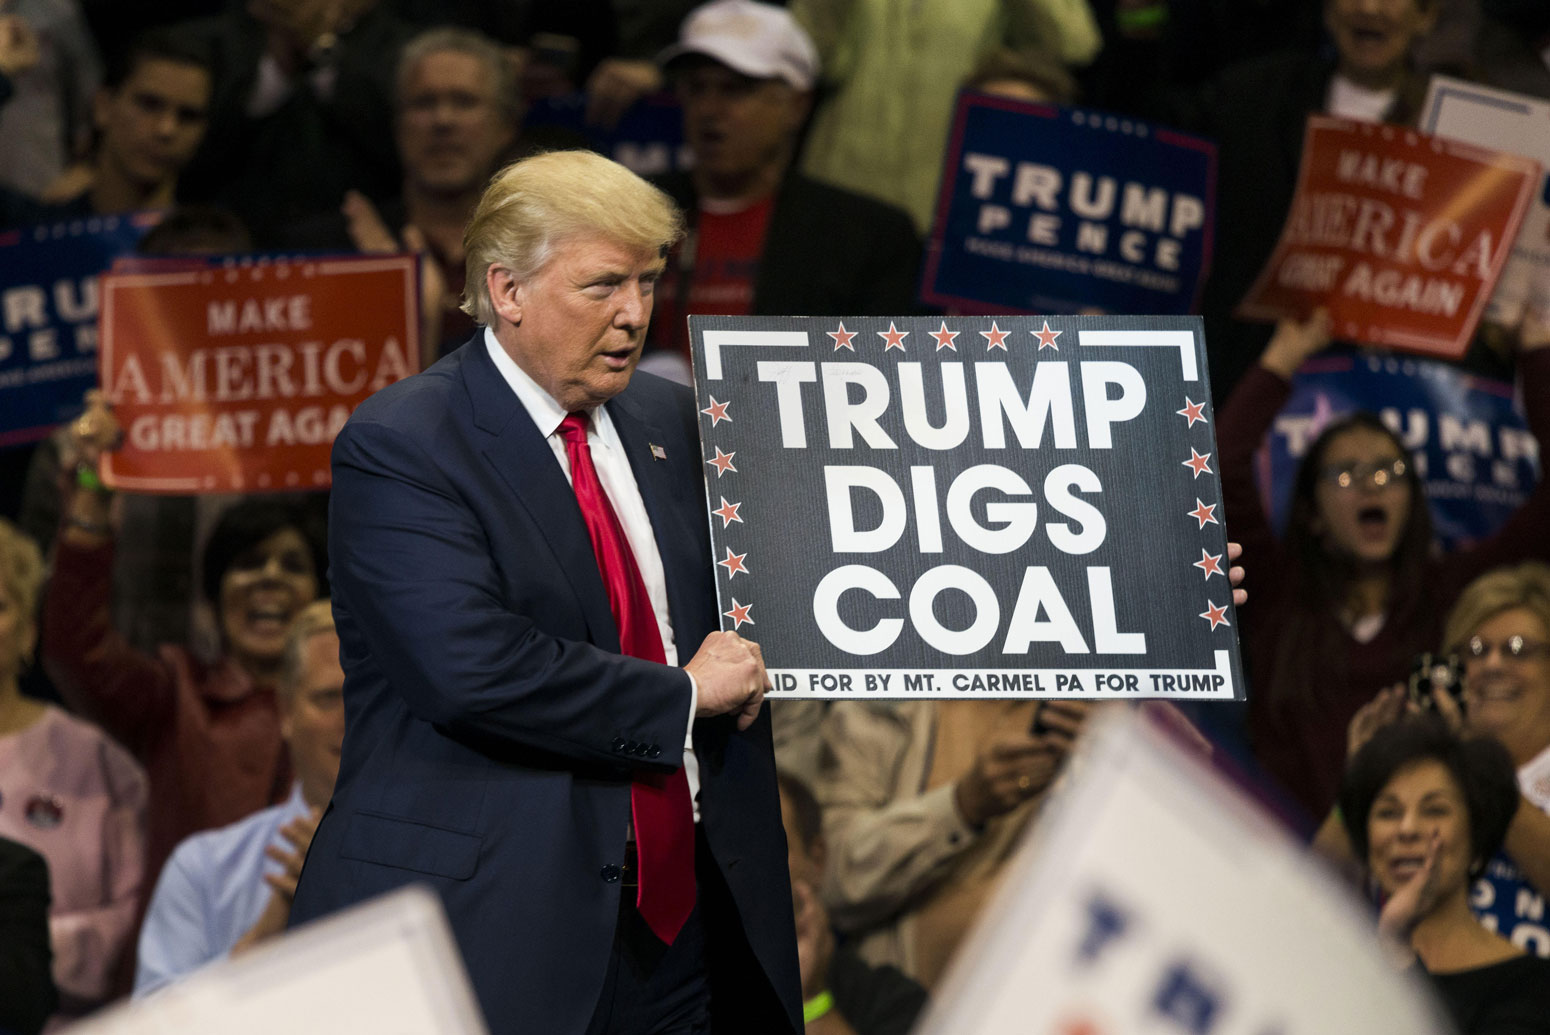 唐纳德·特朗普在宾夕法尼亚州的一场集会上举着“特朗普挖煤”的标语